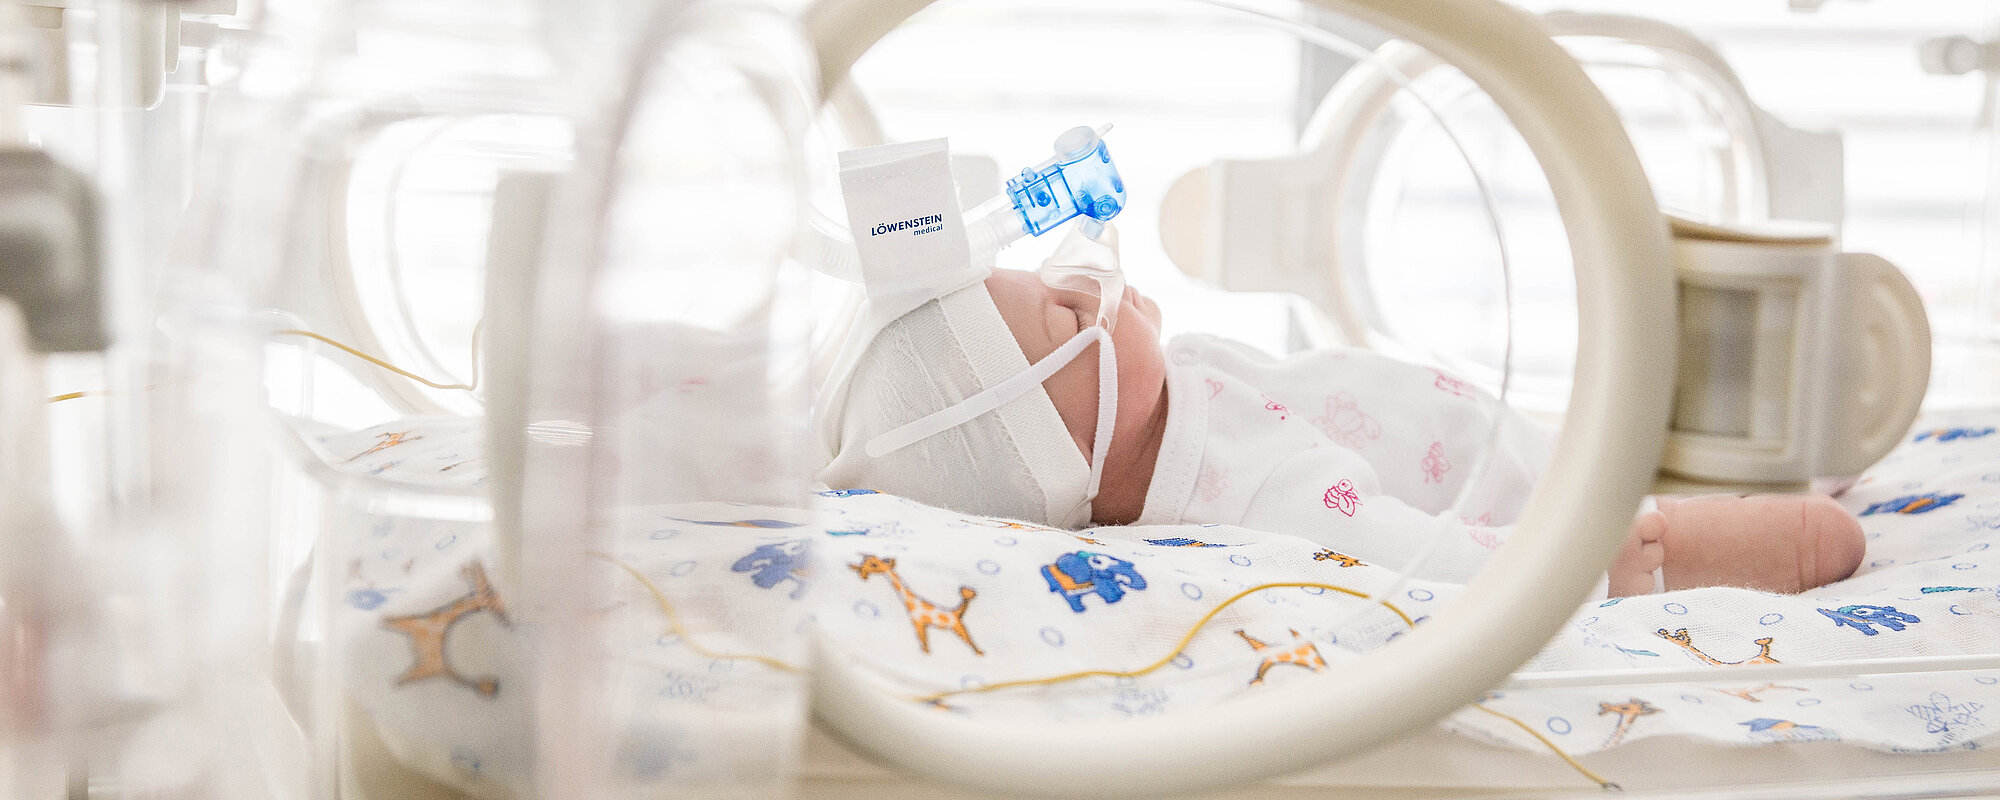 neojet neonatology ventilation preterm infant clinc lifeterm